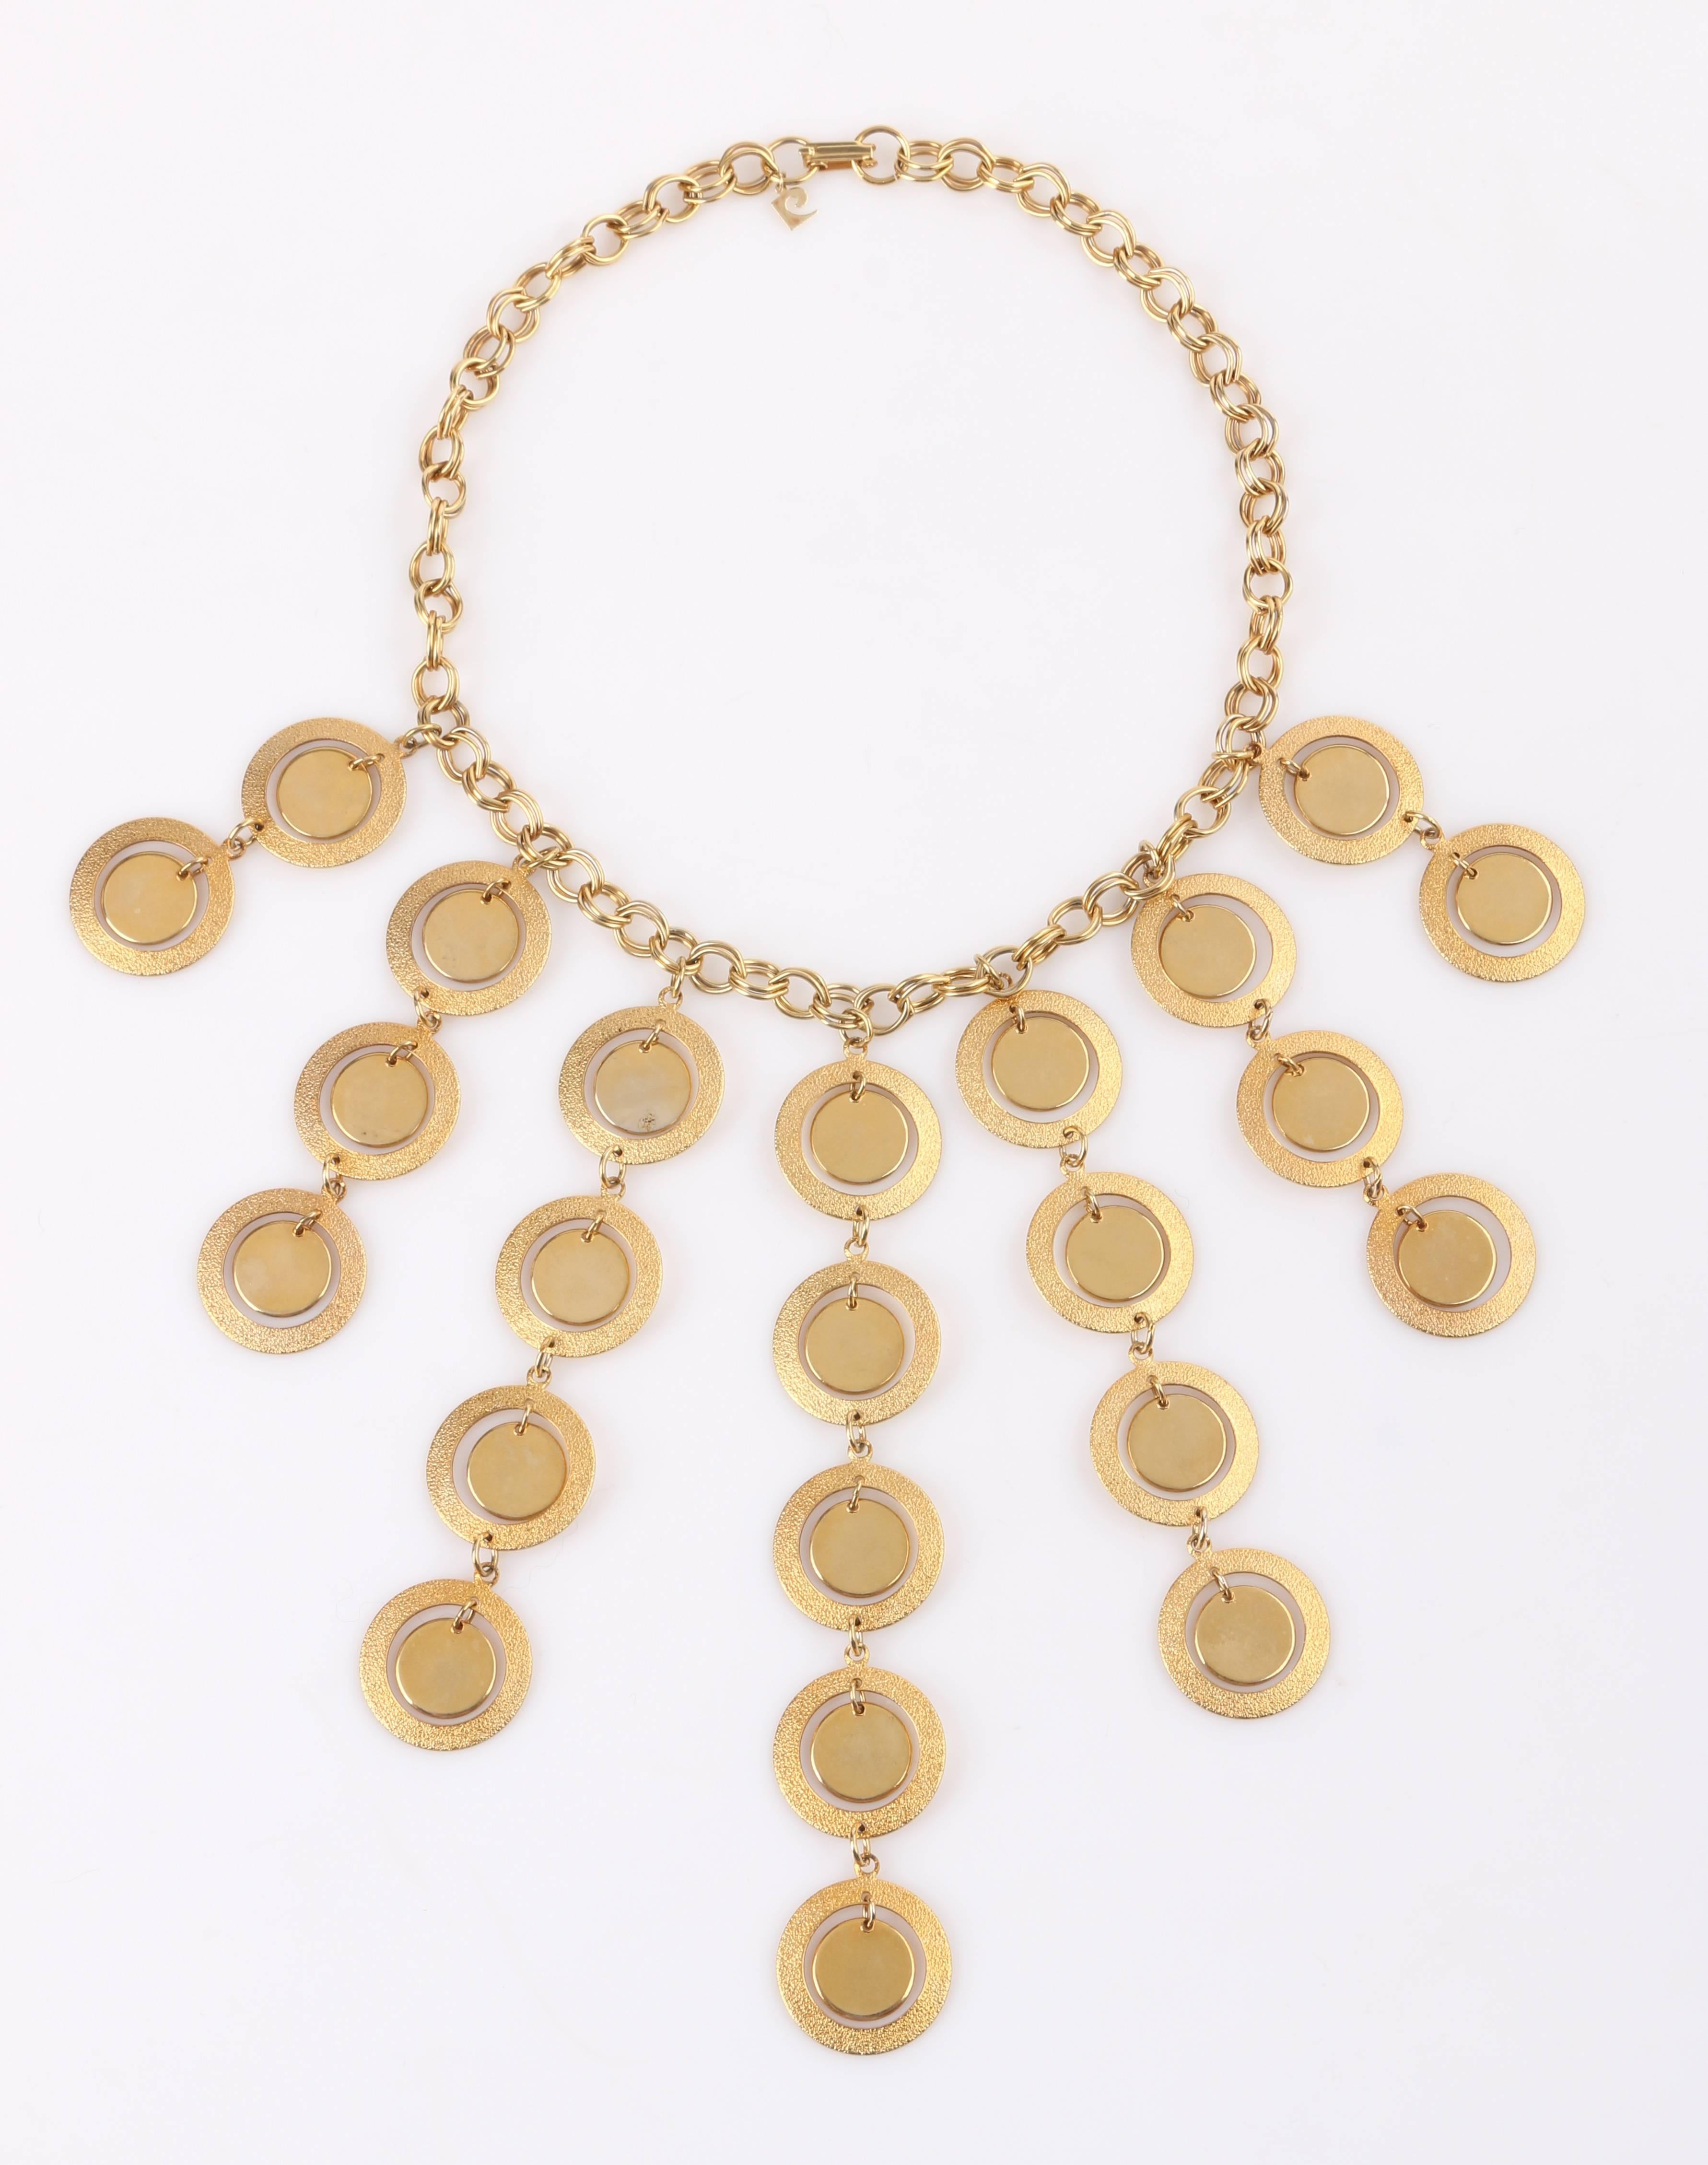 Vintage Pierre Cardin c.1960's Gold modernistischen Scheibe Kronleuchter Halskette. Sieben unterschiedlich lange, goldfarbene, miteinander verbundene Tropfen. Jeder Tropfen besteht aus strukturierten äußeren Metallringen und polierten inneren